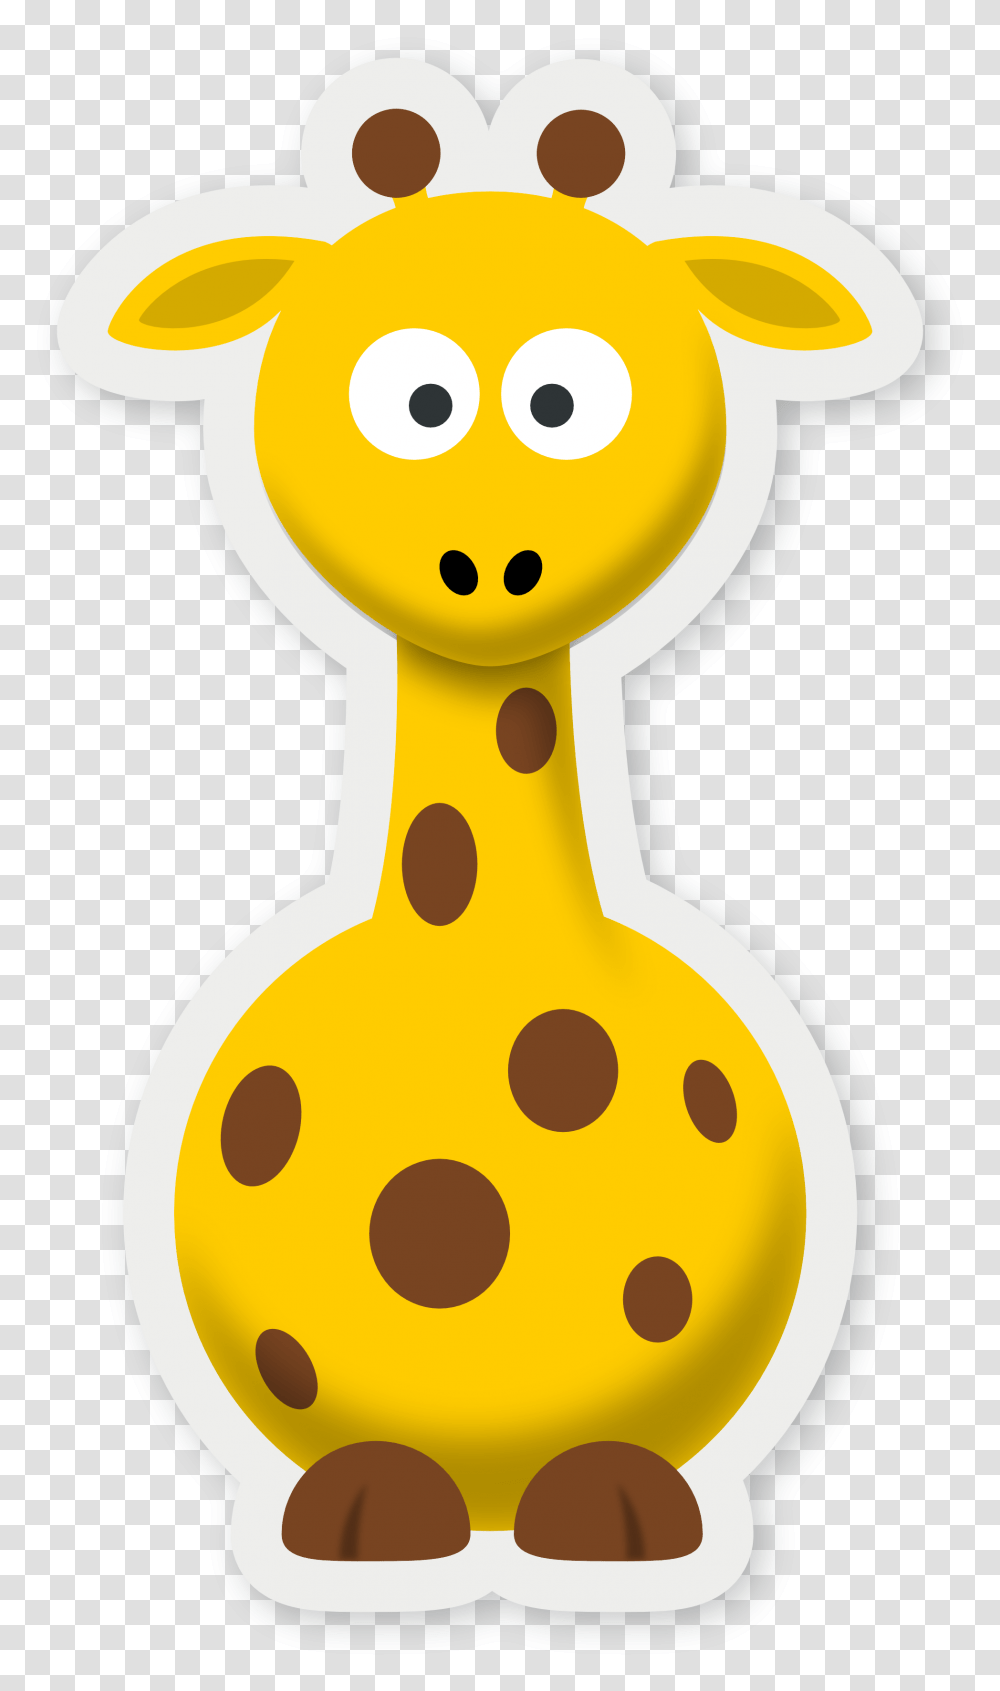 Download Pics Of Cartoon Giraffes Cartoon Pictures Of Giraffes, Rattle, Snowman, Winter, Outdoors Transparent Png